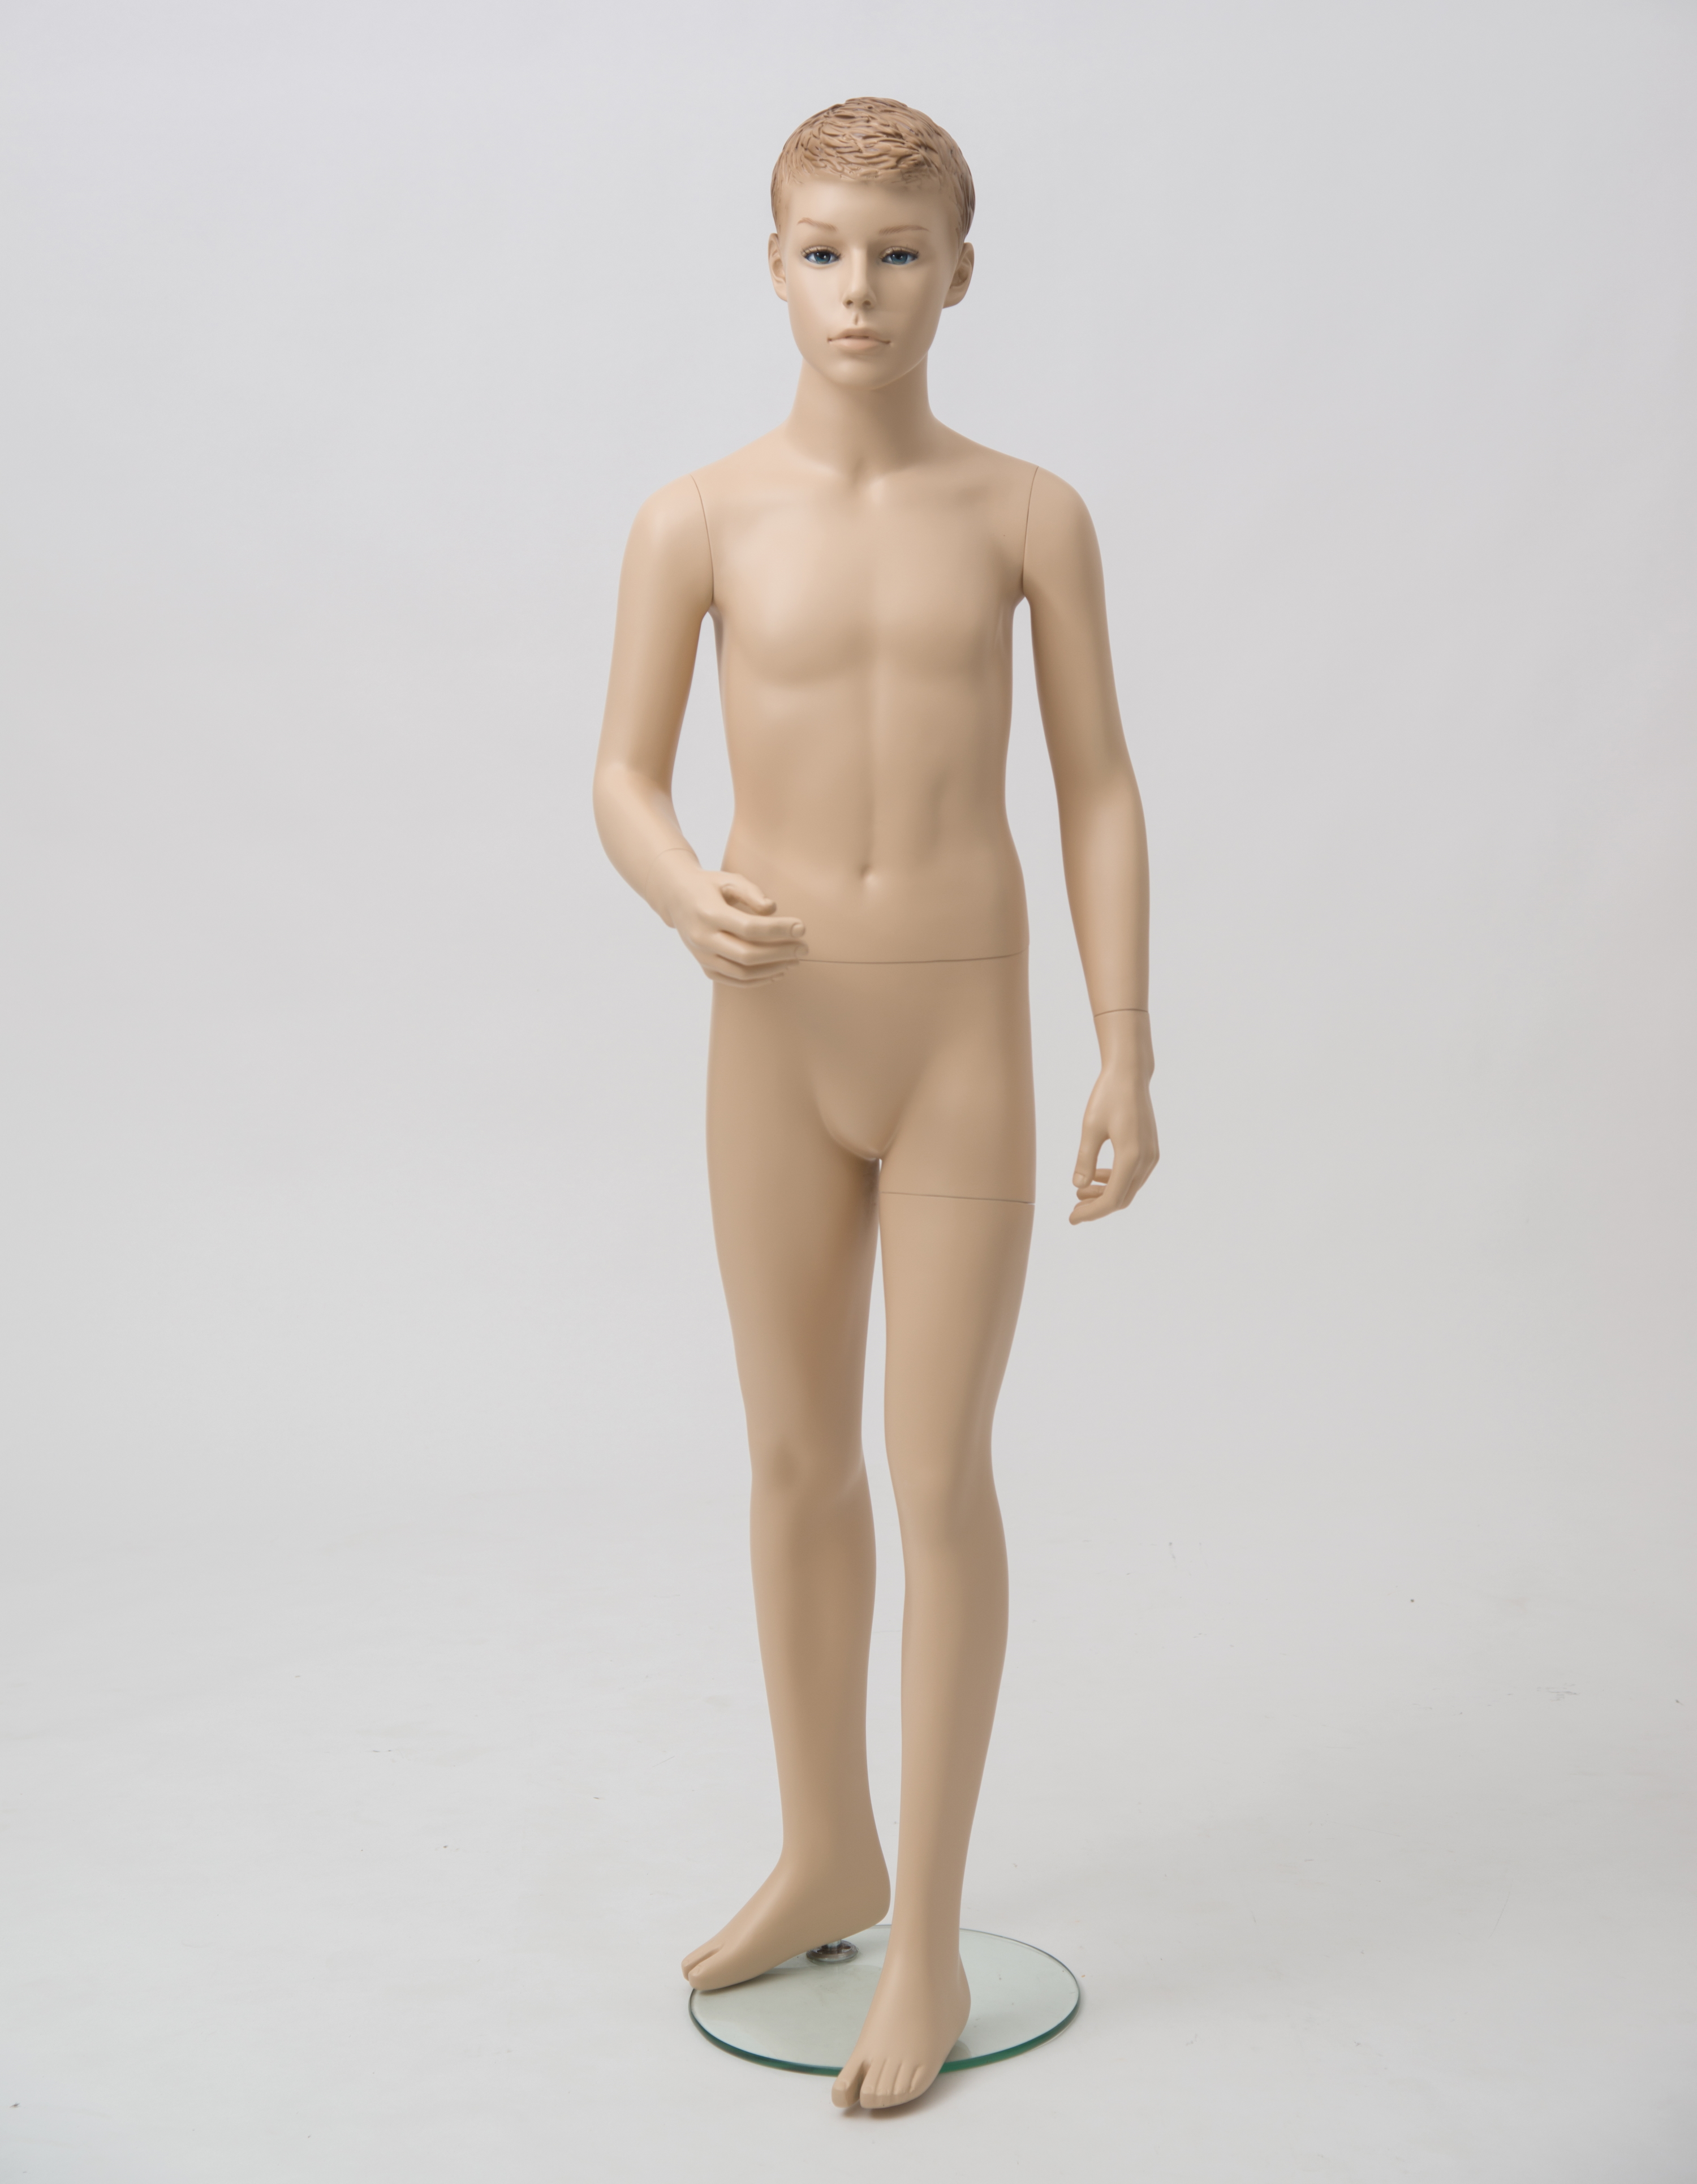 Schaufensterfigur "Bodysculpt" EVO2 Junge 10 Jahre hautfarbe